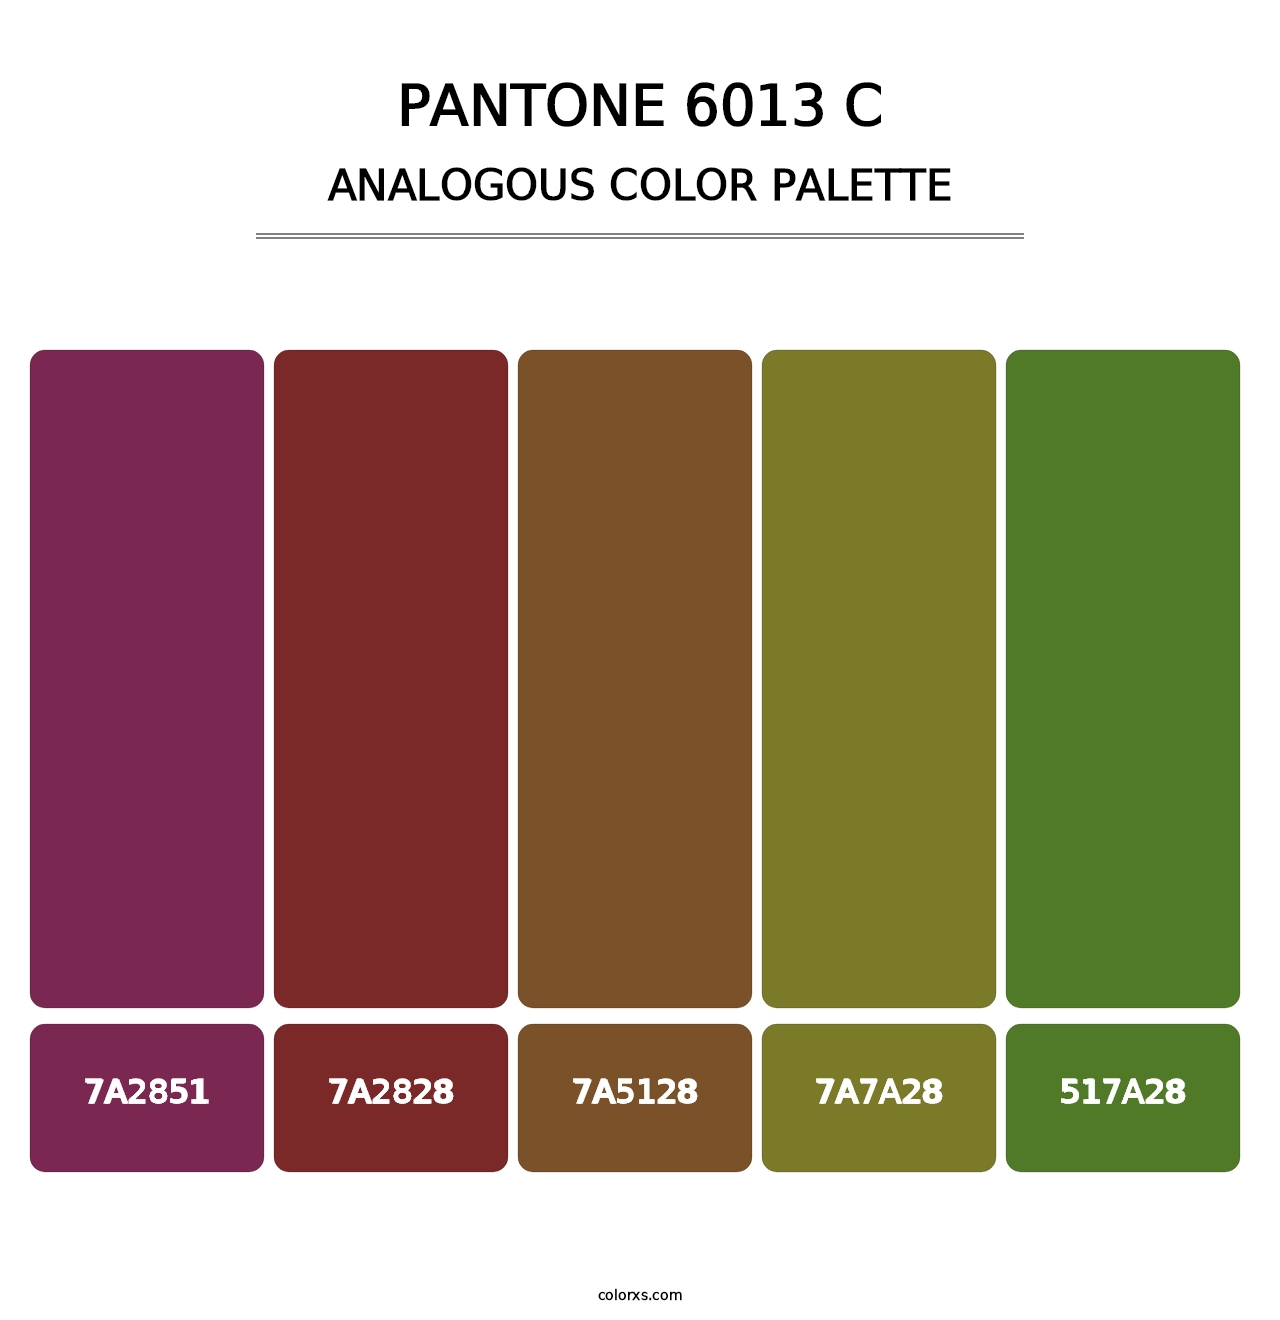 PANTONE 6013 C - Analogous Color Palette